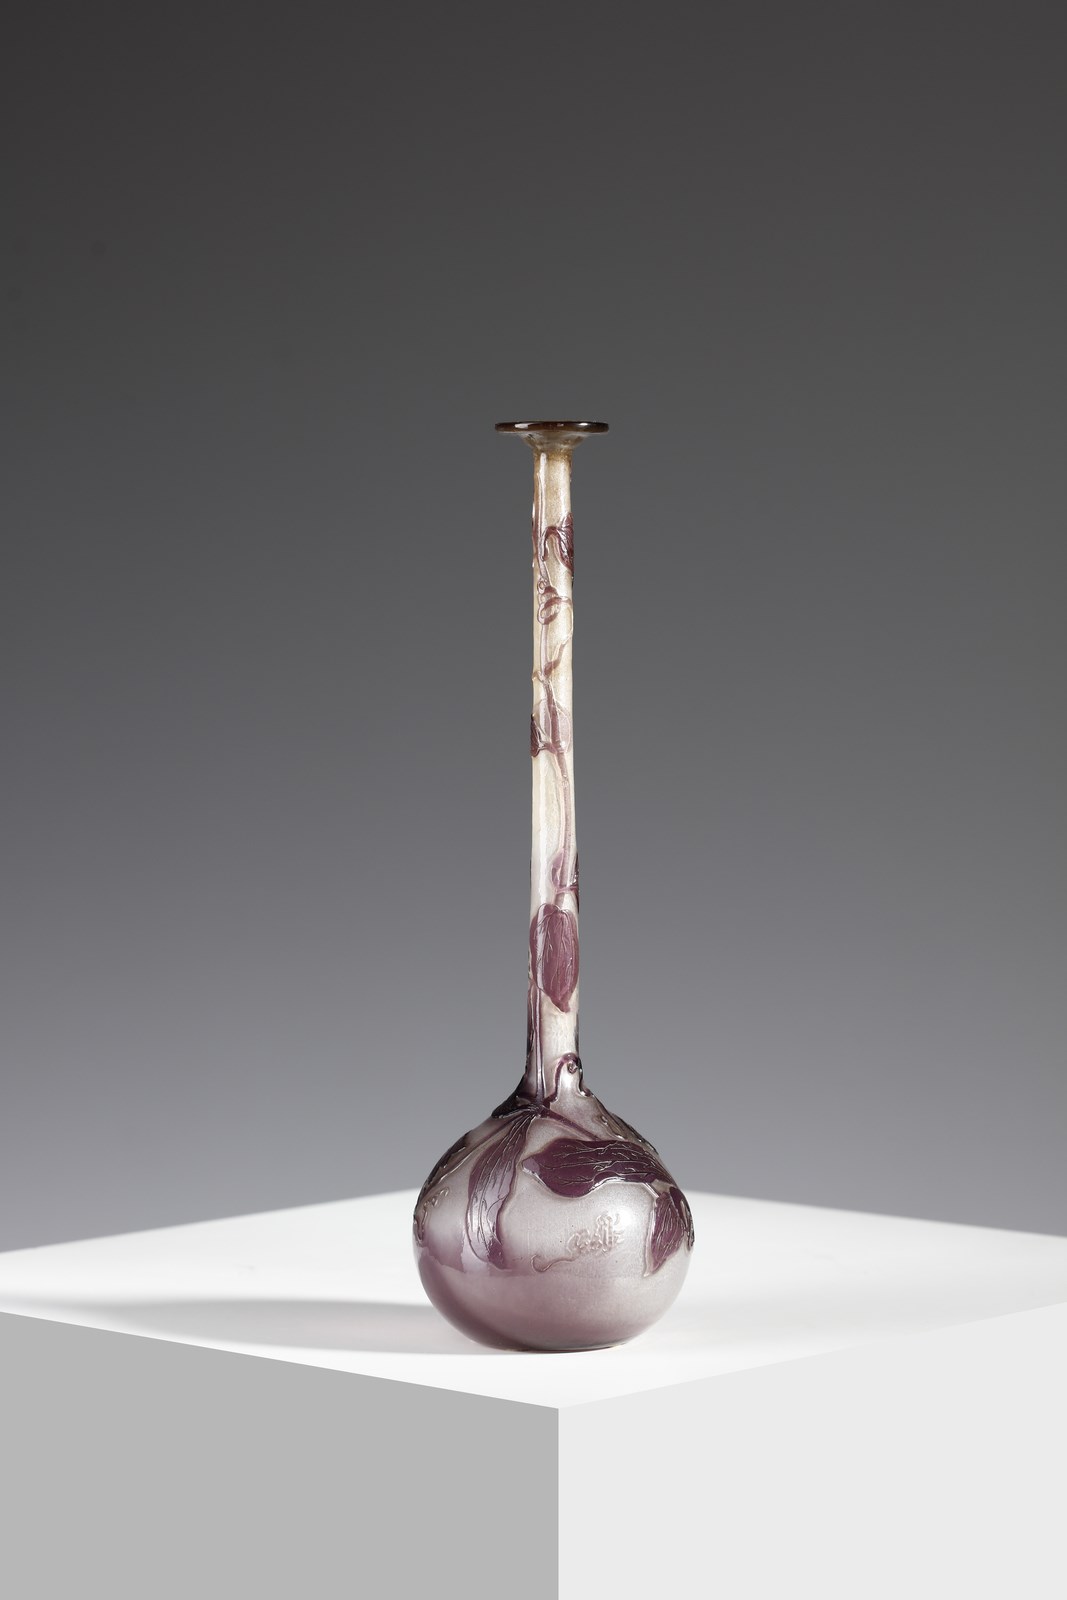 Vaso soliflore a bulbo in vetro doppio, con decoro vegetale nei toni del viola, finemente inciso ad acido su fondo rosato ( Gallé)